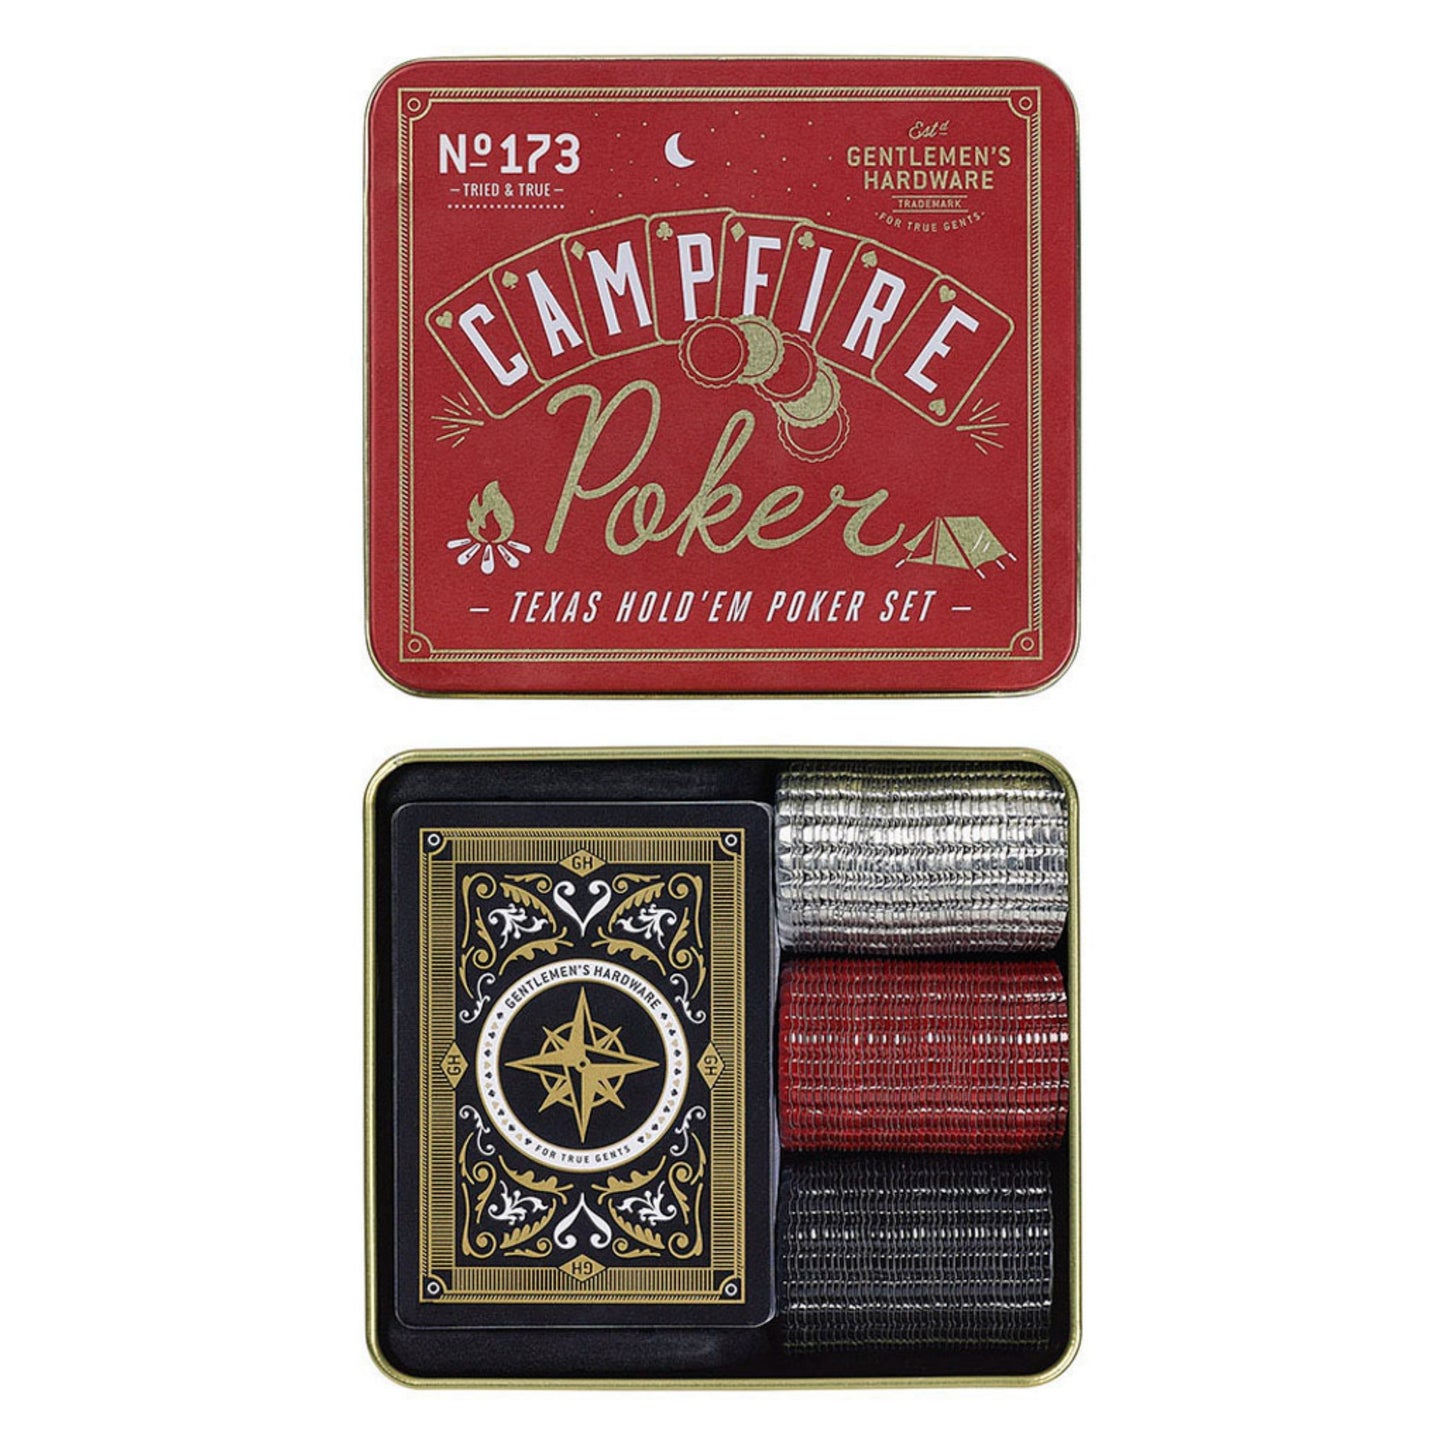 Campfire poker | Gentlemen's hardware